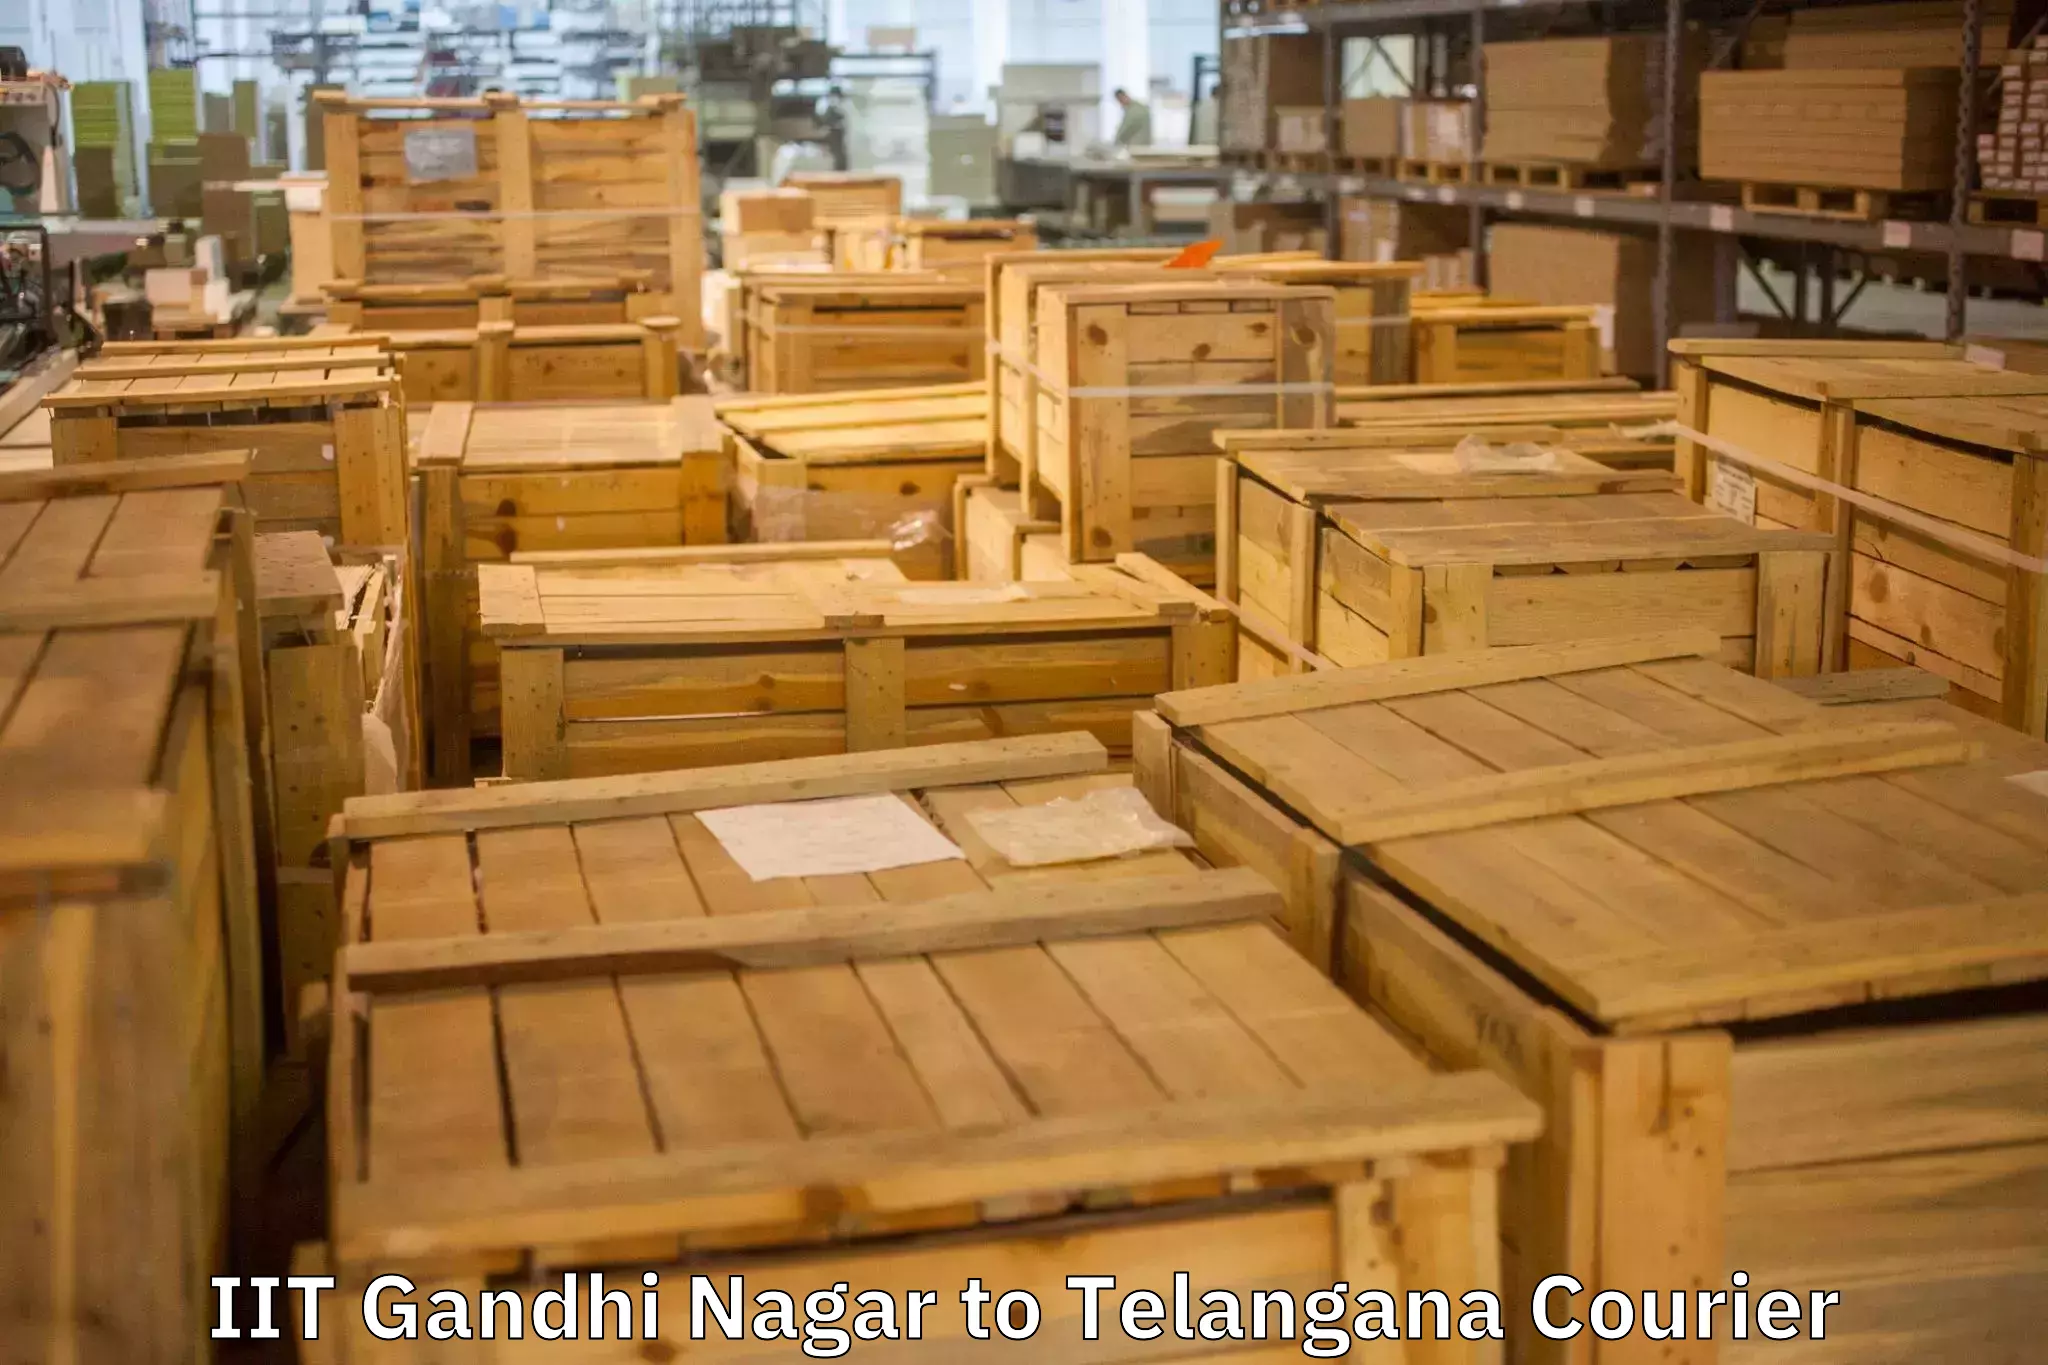 Professional moving assistance IIT Gandhi Nagar to Kothakota